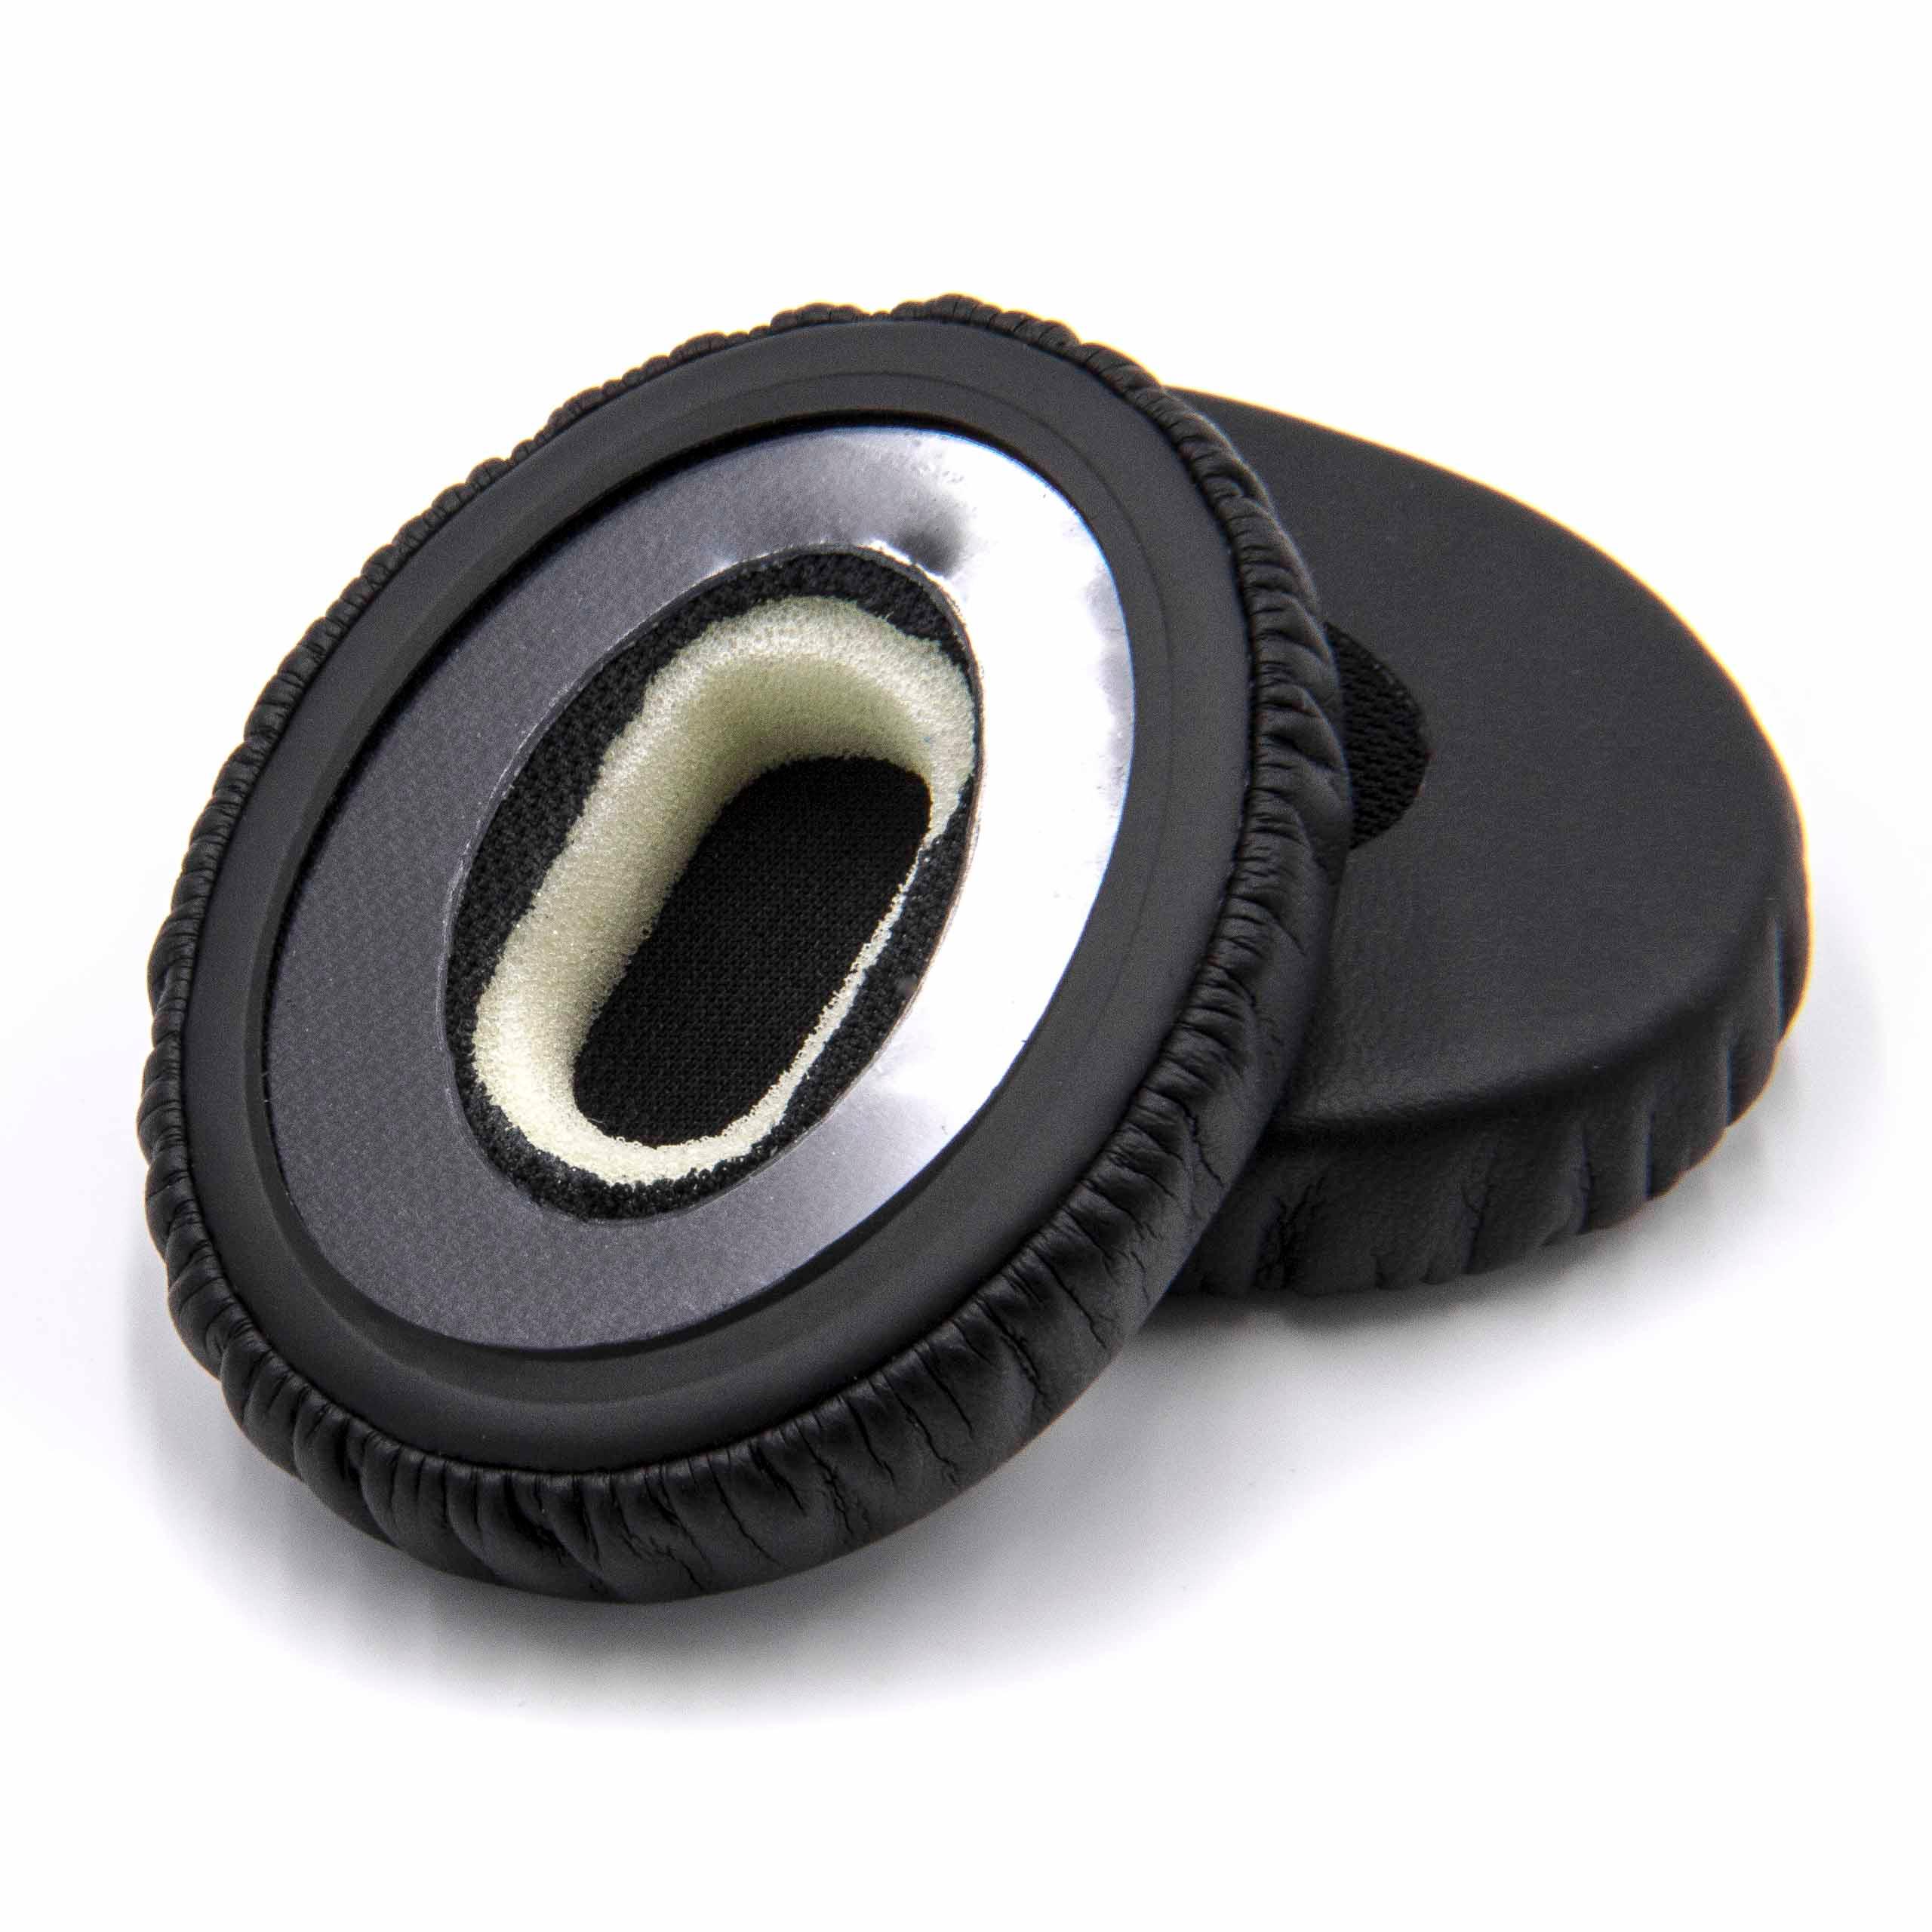 2x Coussinets d'oreille 5,6cm pour casque Bose OnEar - fibre synthétique noir